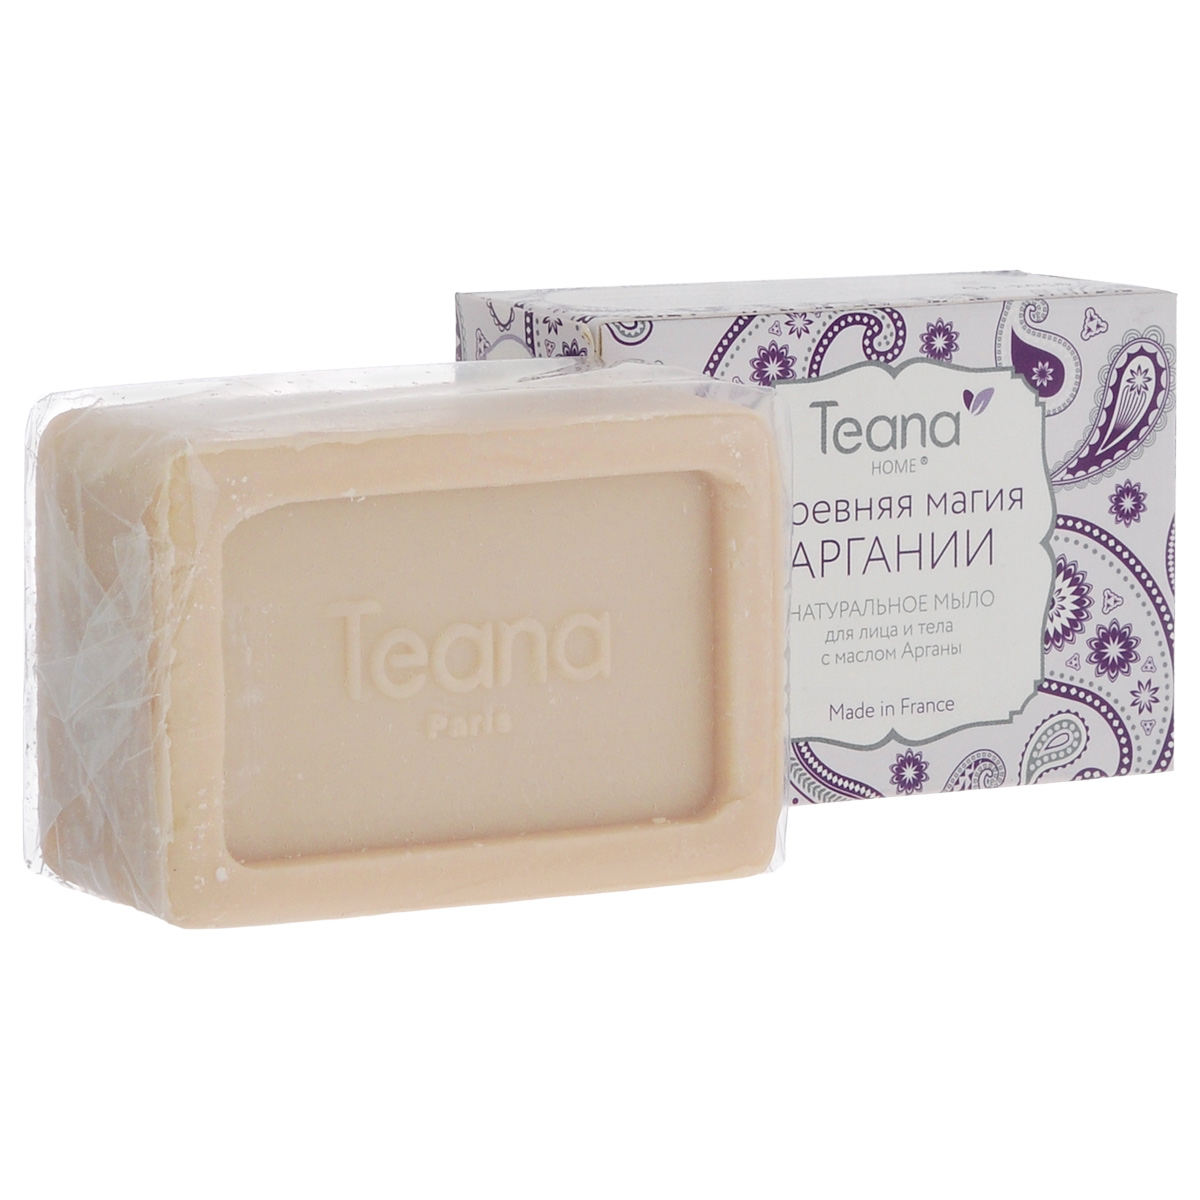 Teana Натуральное мыло для лица и тела 